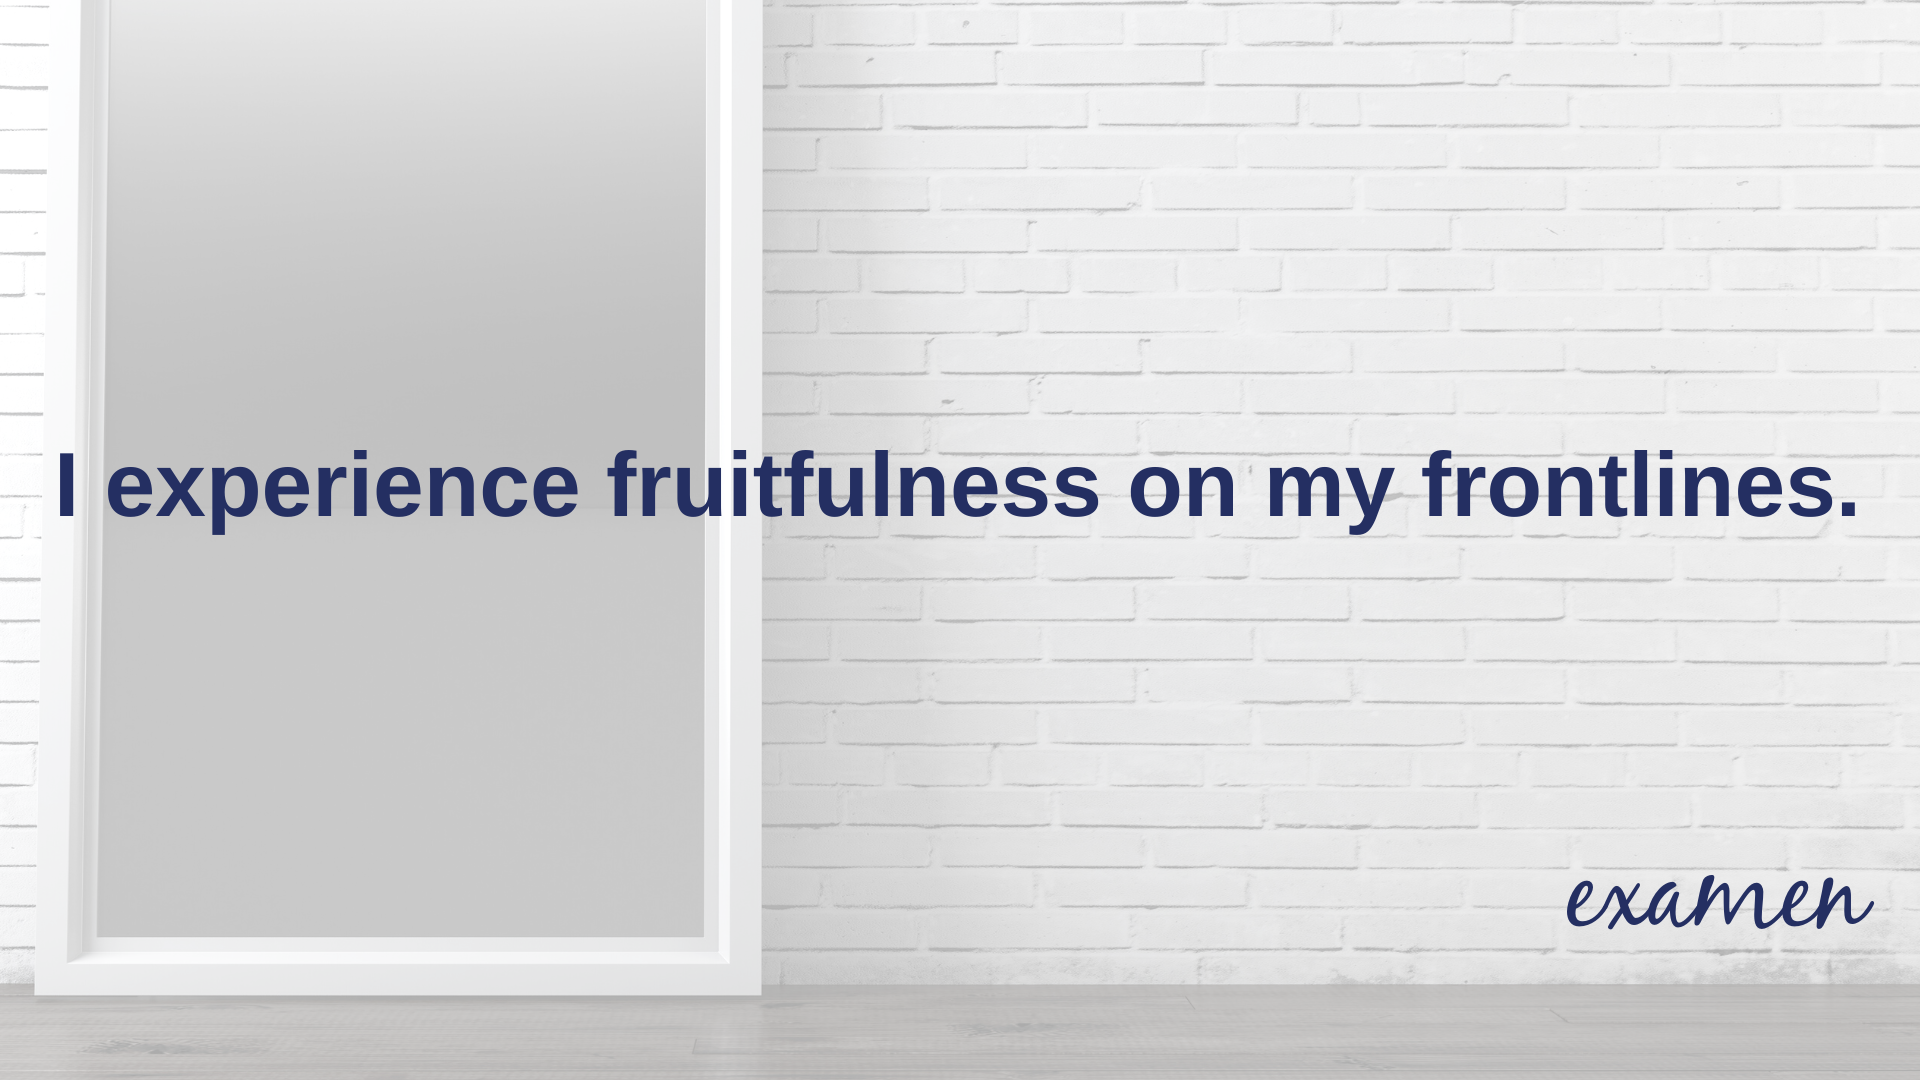 fruitfulness title